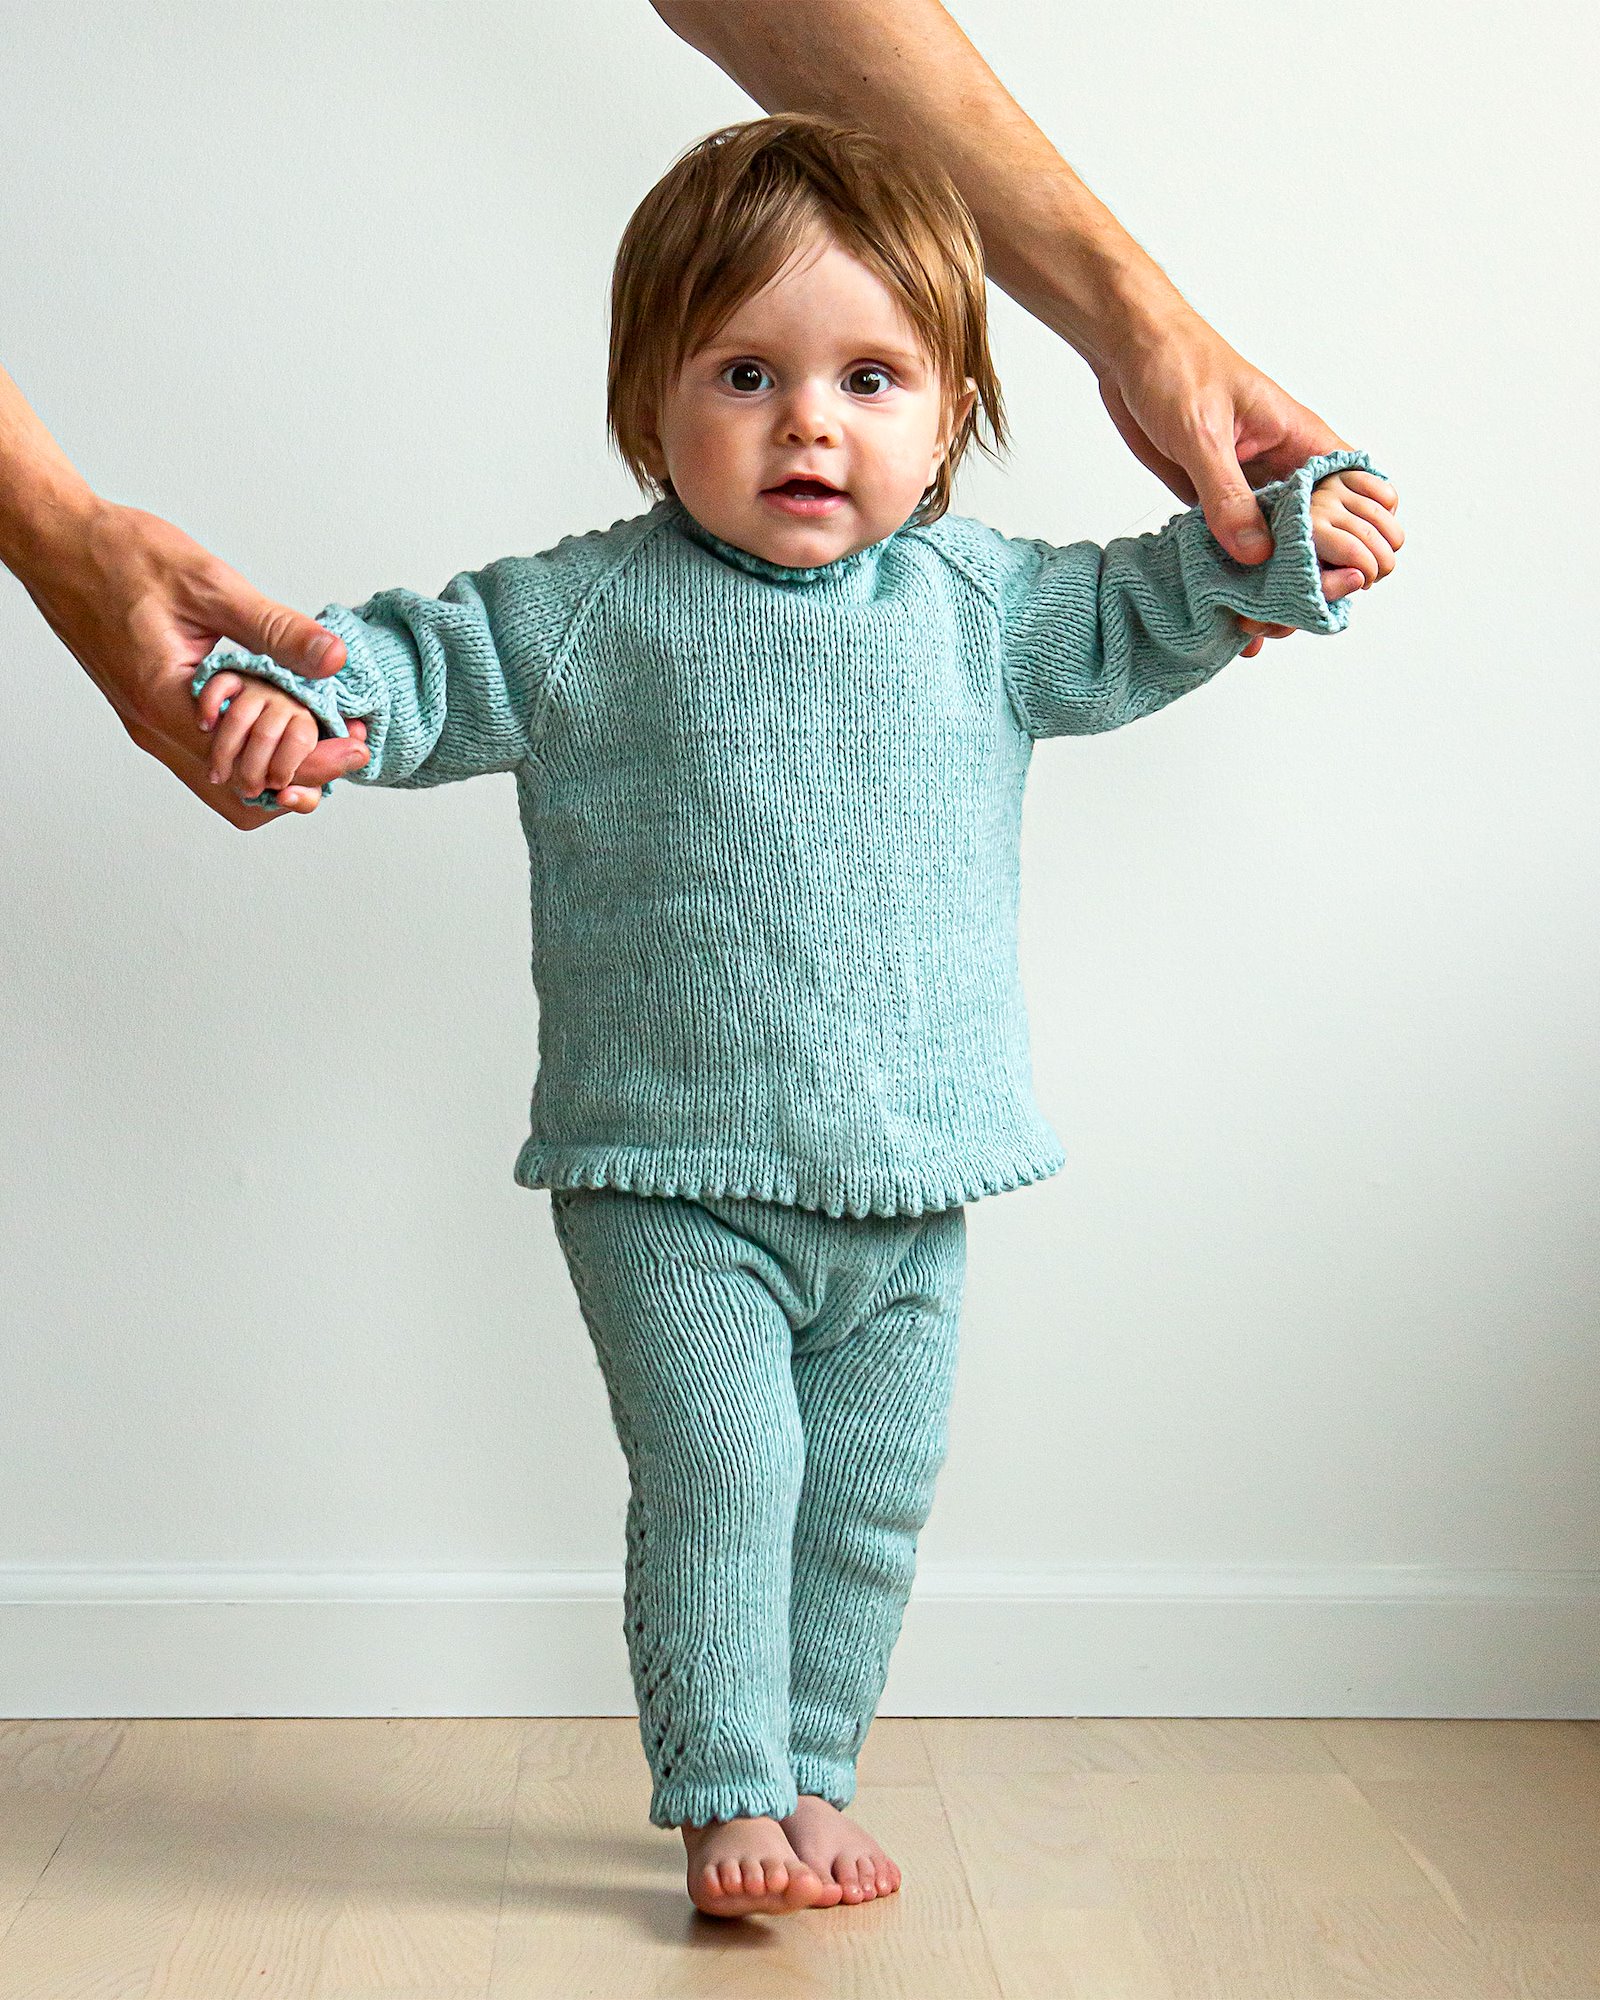 FRAYA strikkeoppskrift - Irresistible me cardigan and leggings, barn & baby - Thoughtful version FRAYA6045_image.jpg